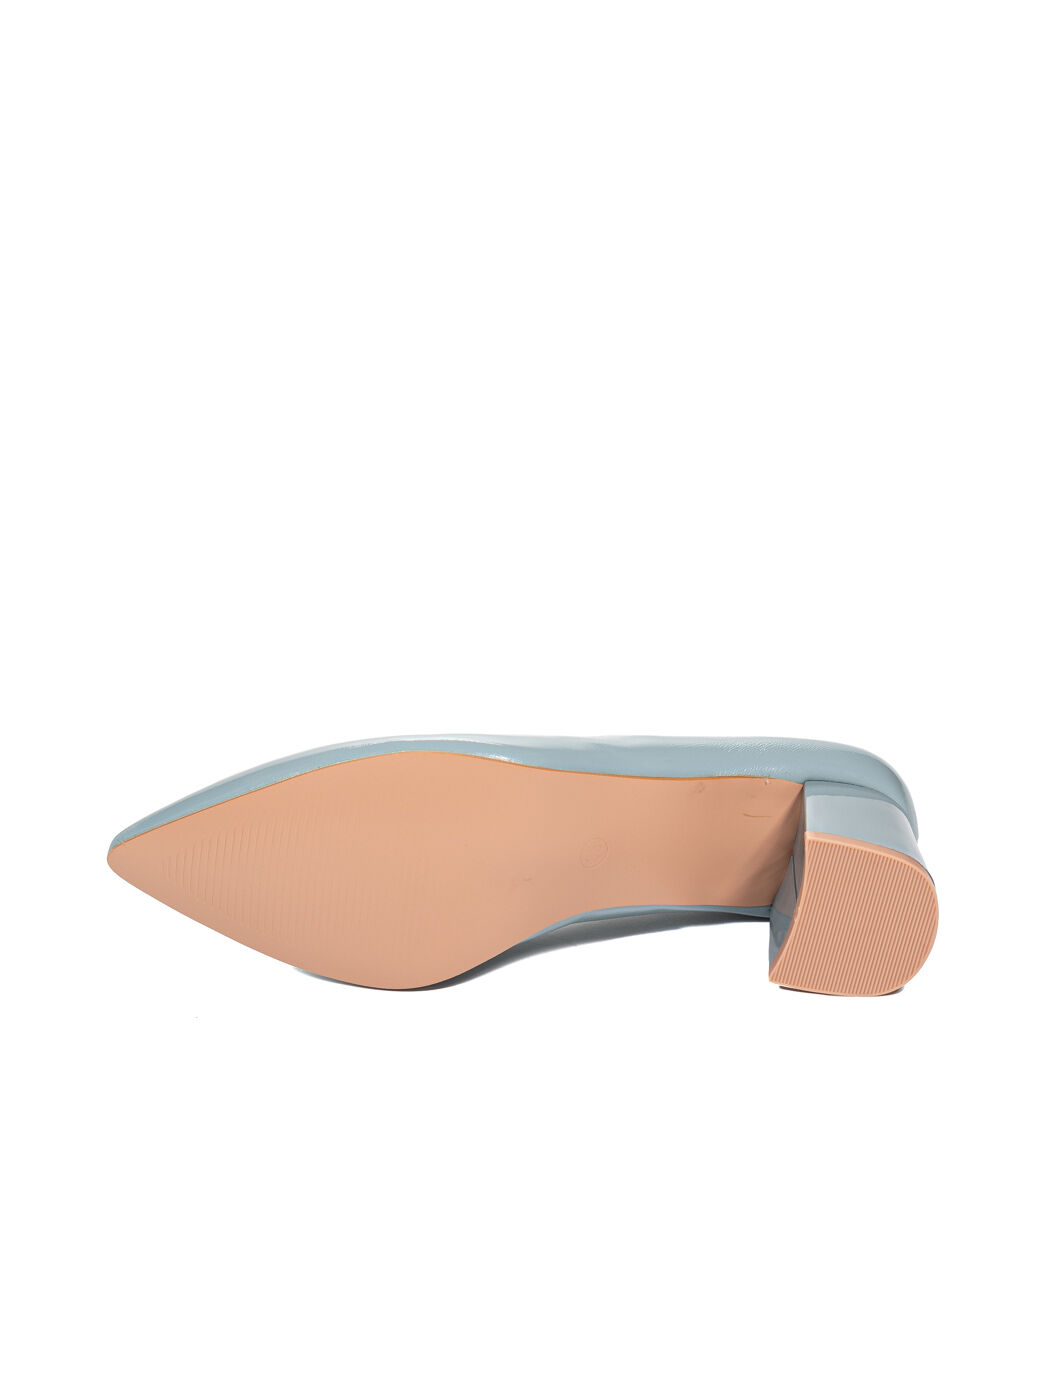 Туфли женские голубые искусственный лак каблук устойчивый демисезон от производителя 6M вид 2